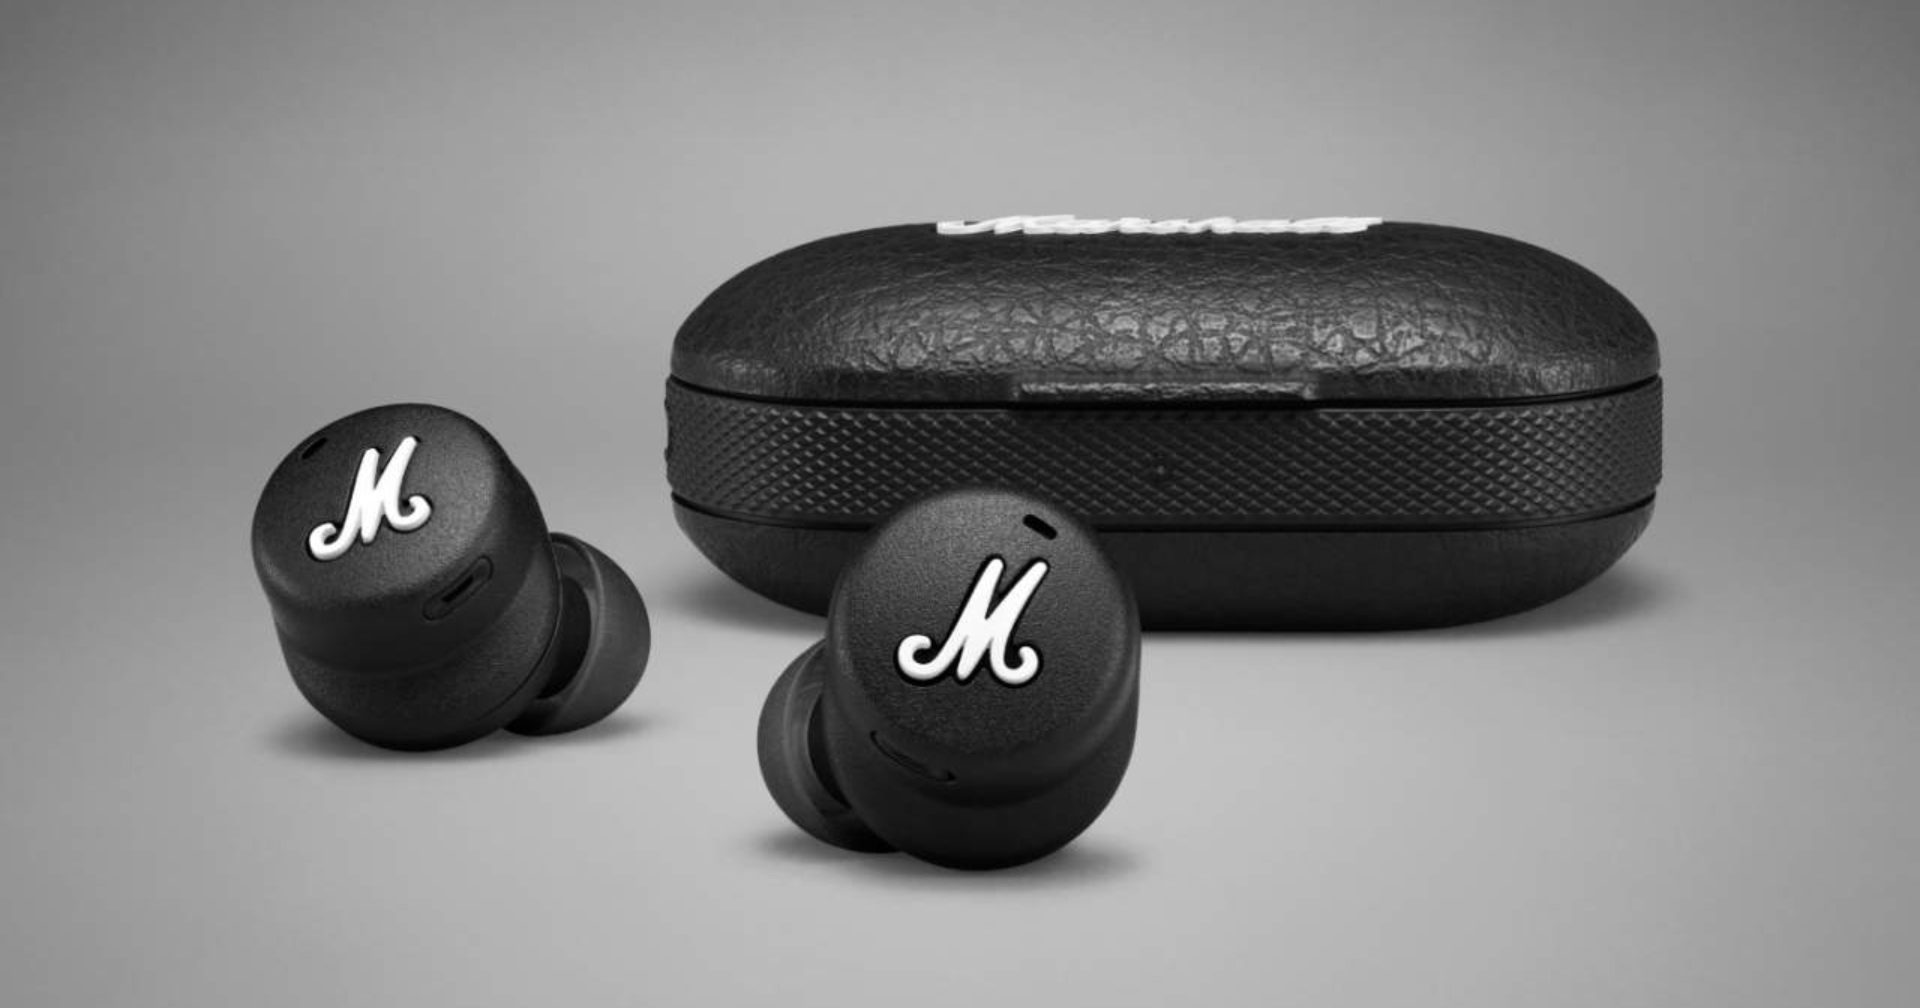 เปิดตัว Marshall Mode II หูฟัง True Wireless รุ่นแรกในราคา 6,000 บาท